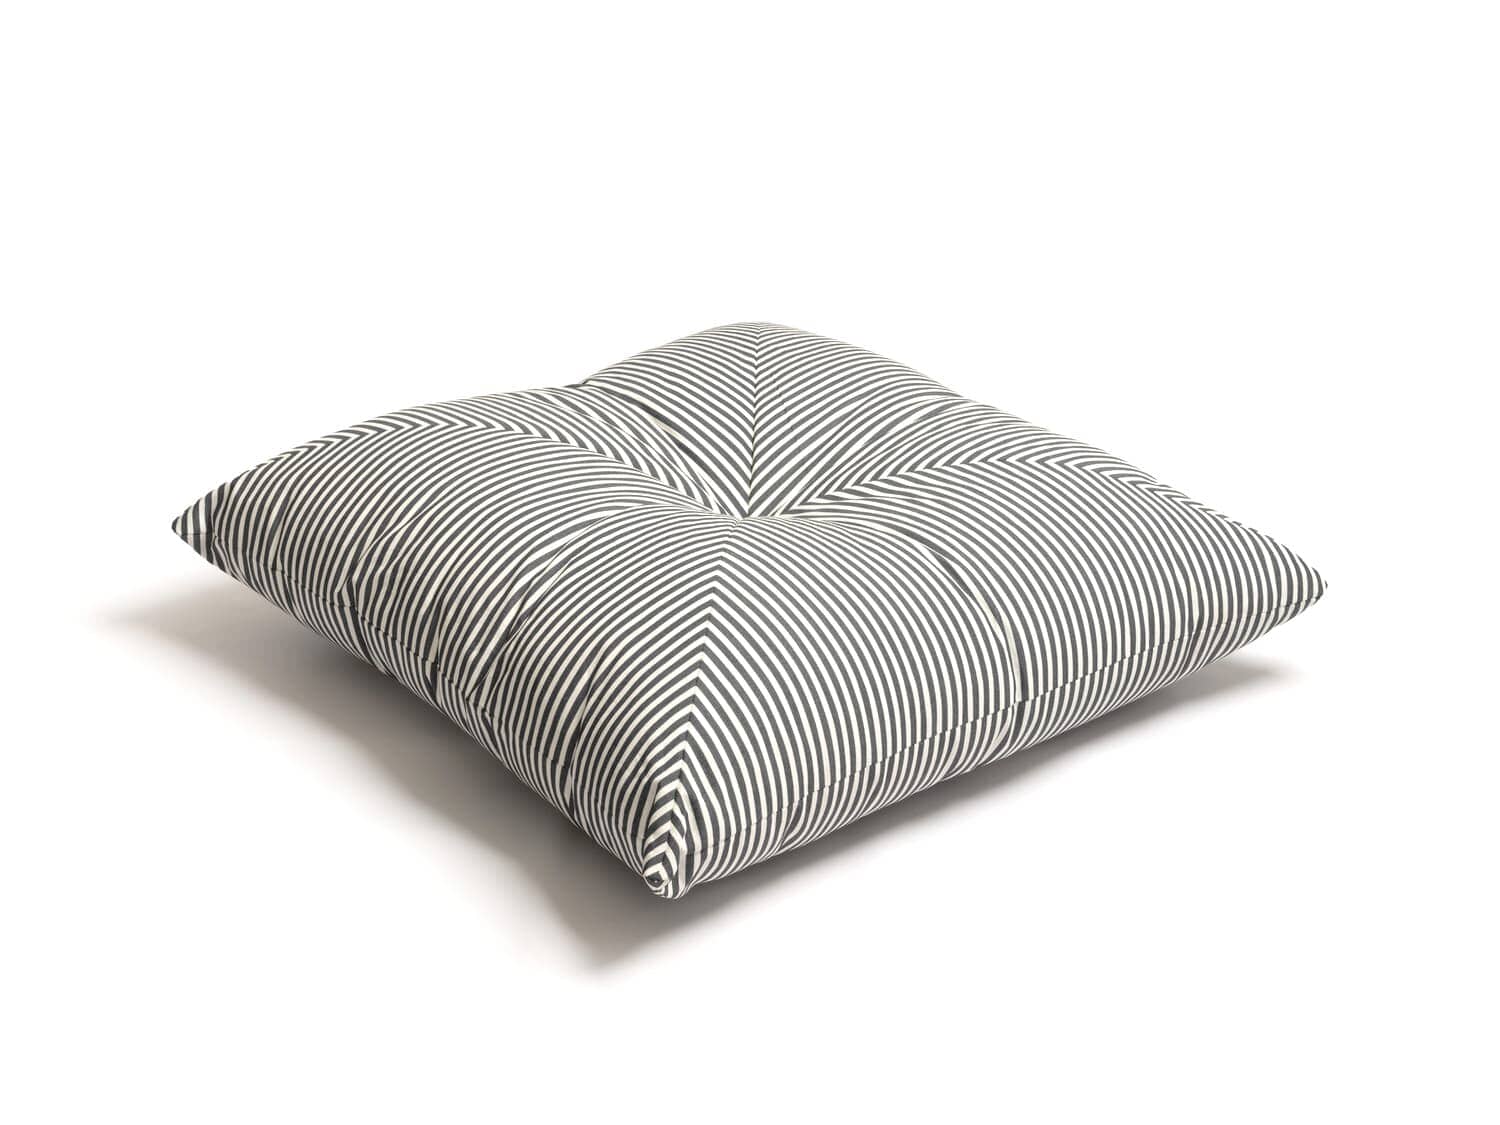 The Floor Pillow - Lauren's Navy Stripe Floor Pillow Business & Pleasure Co 